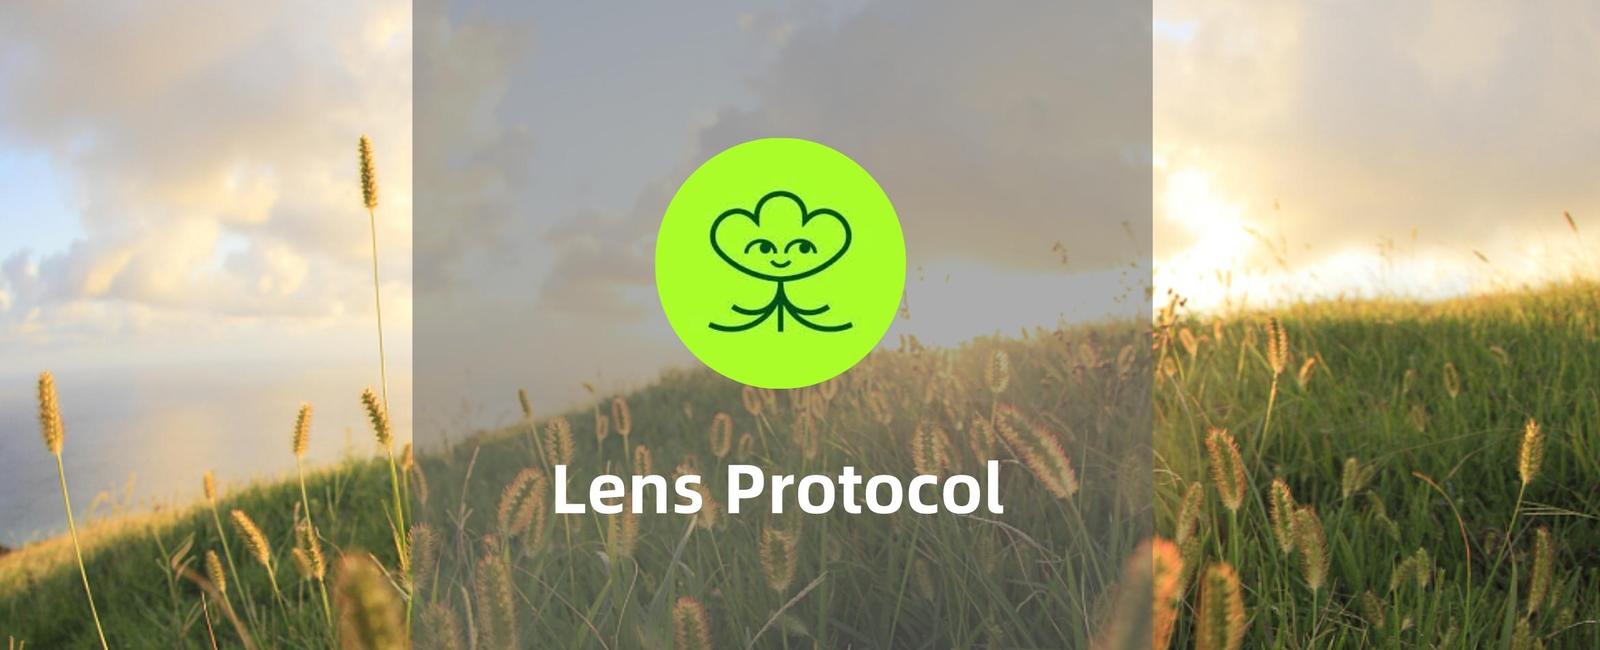 生机盎然的web3社交图谱-Lens Protocol